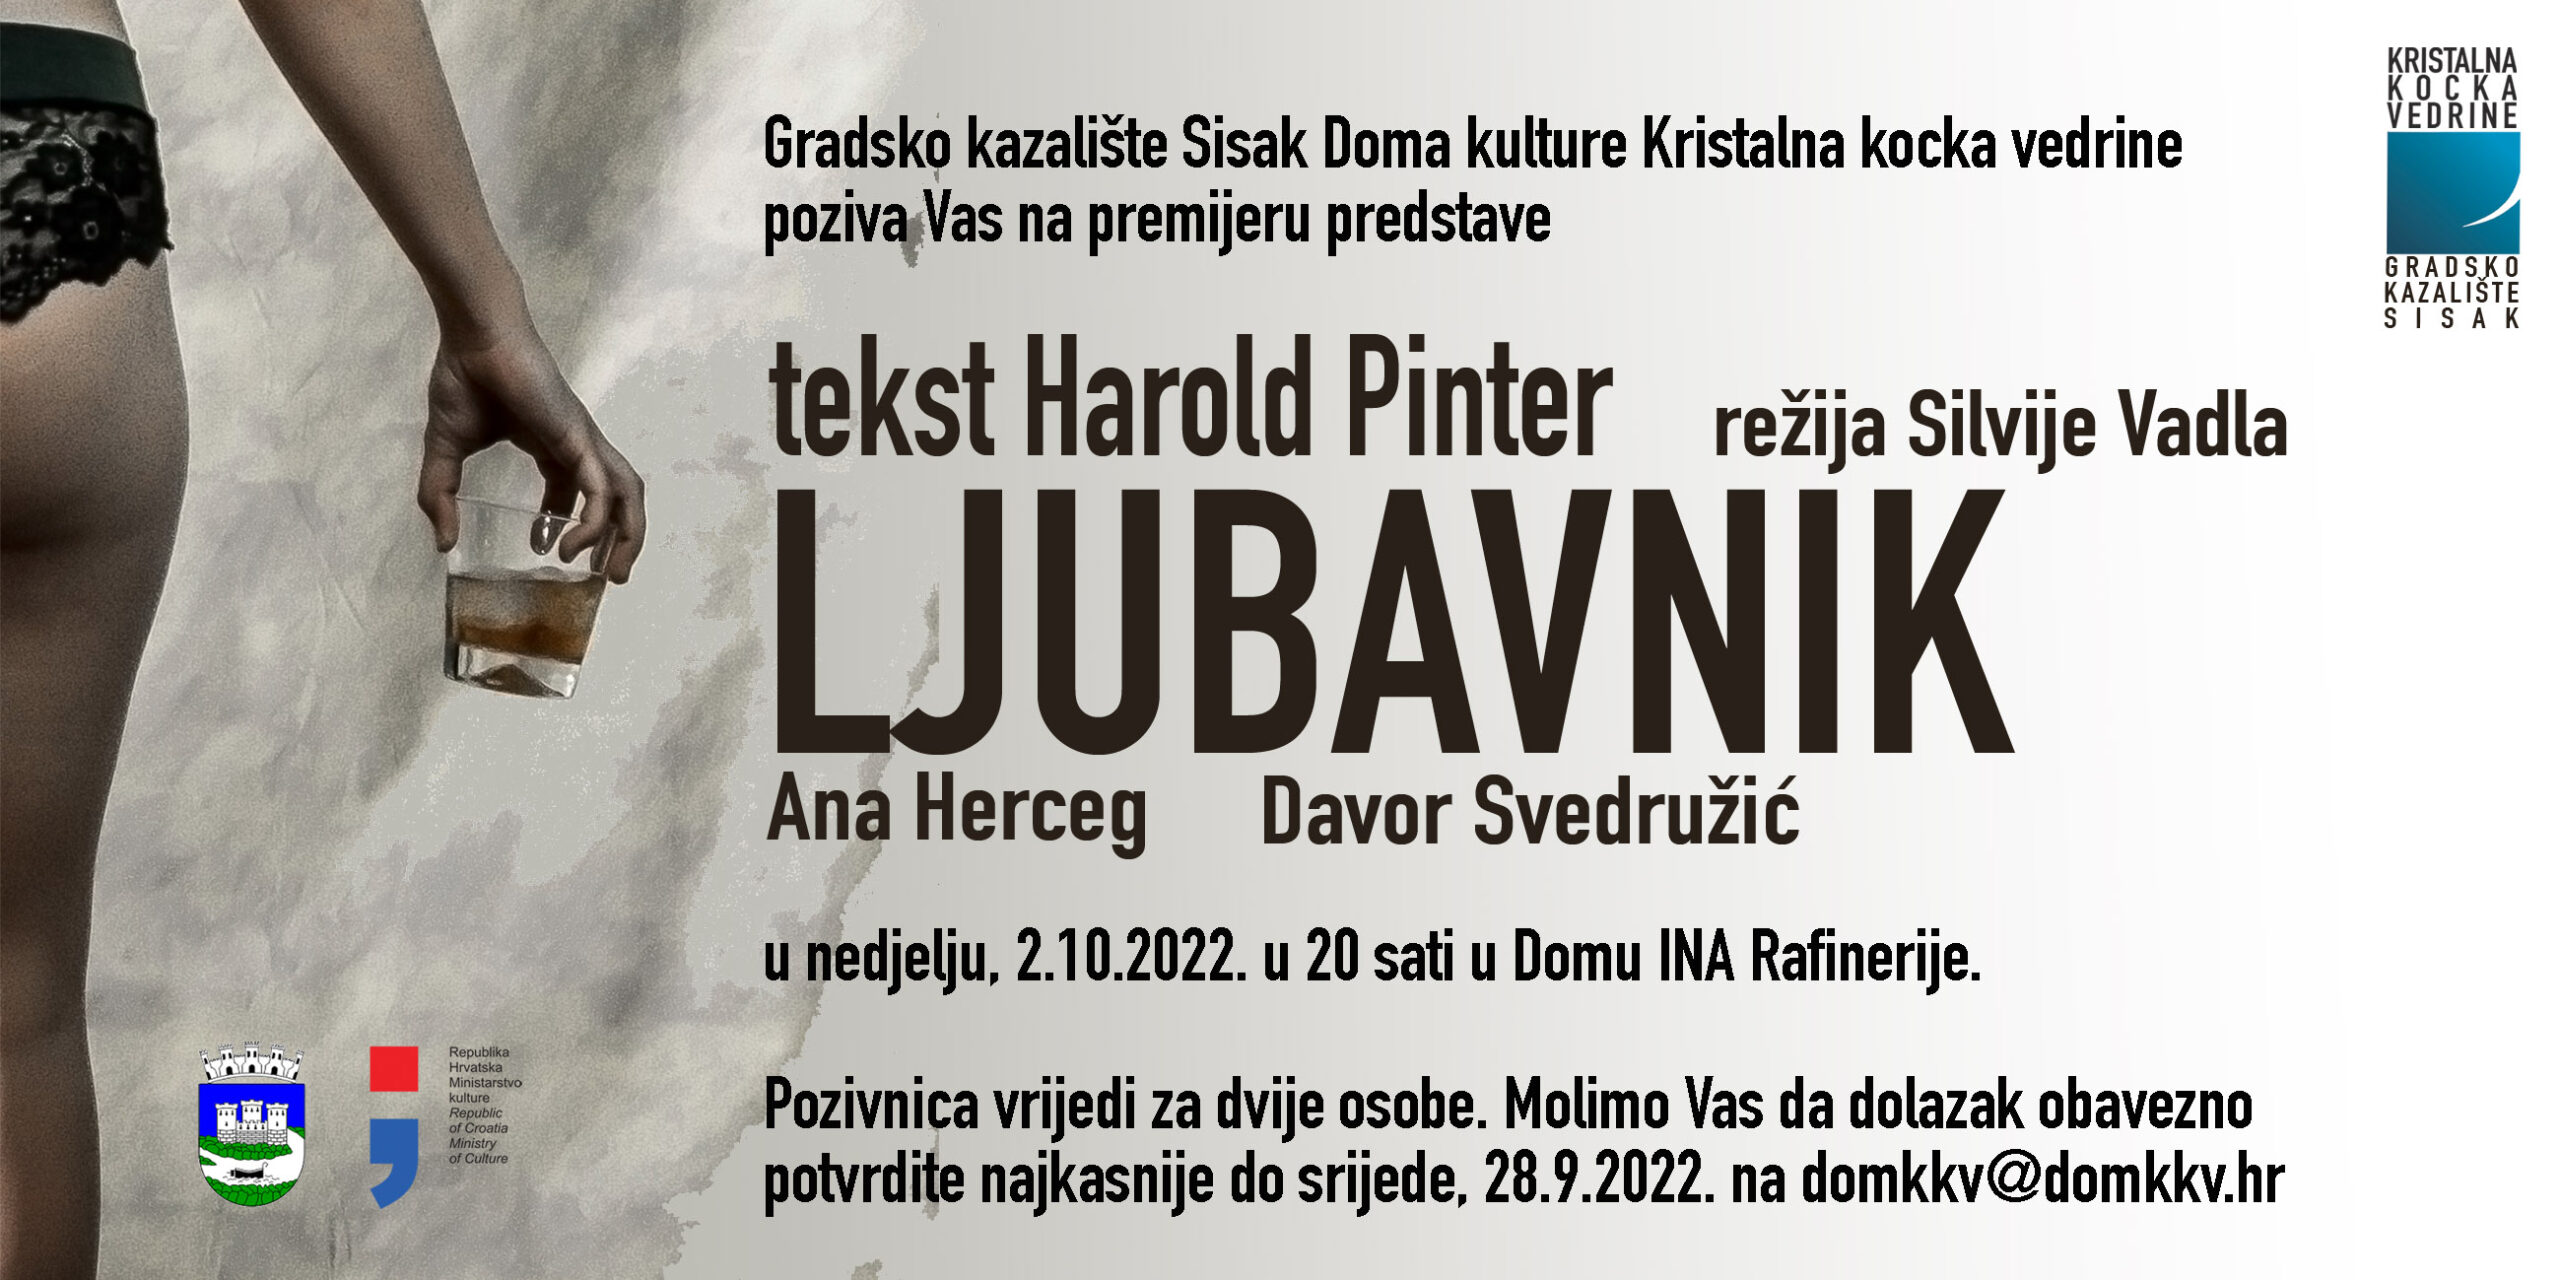 You are currently viewing Premijera nove predstave “Ljubavnik” Gradskog kazališta Sisak